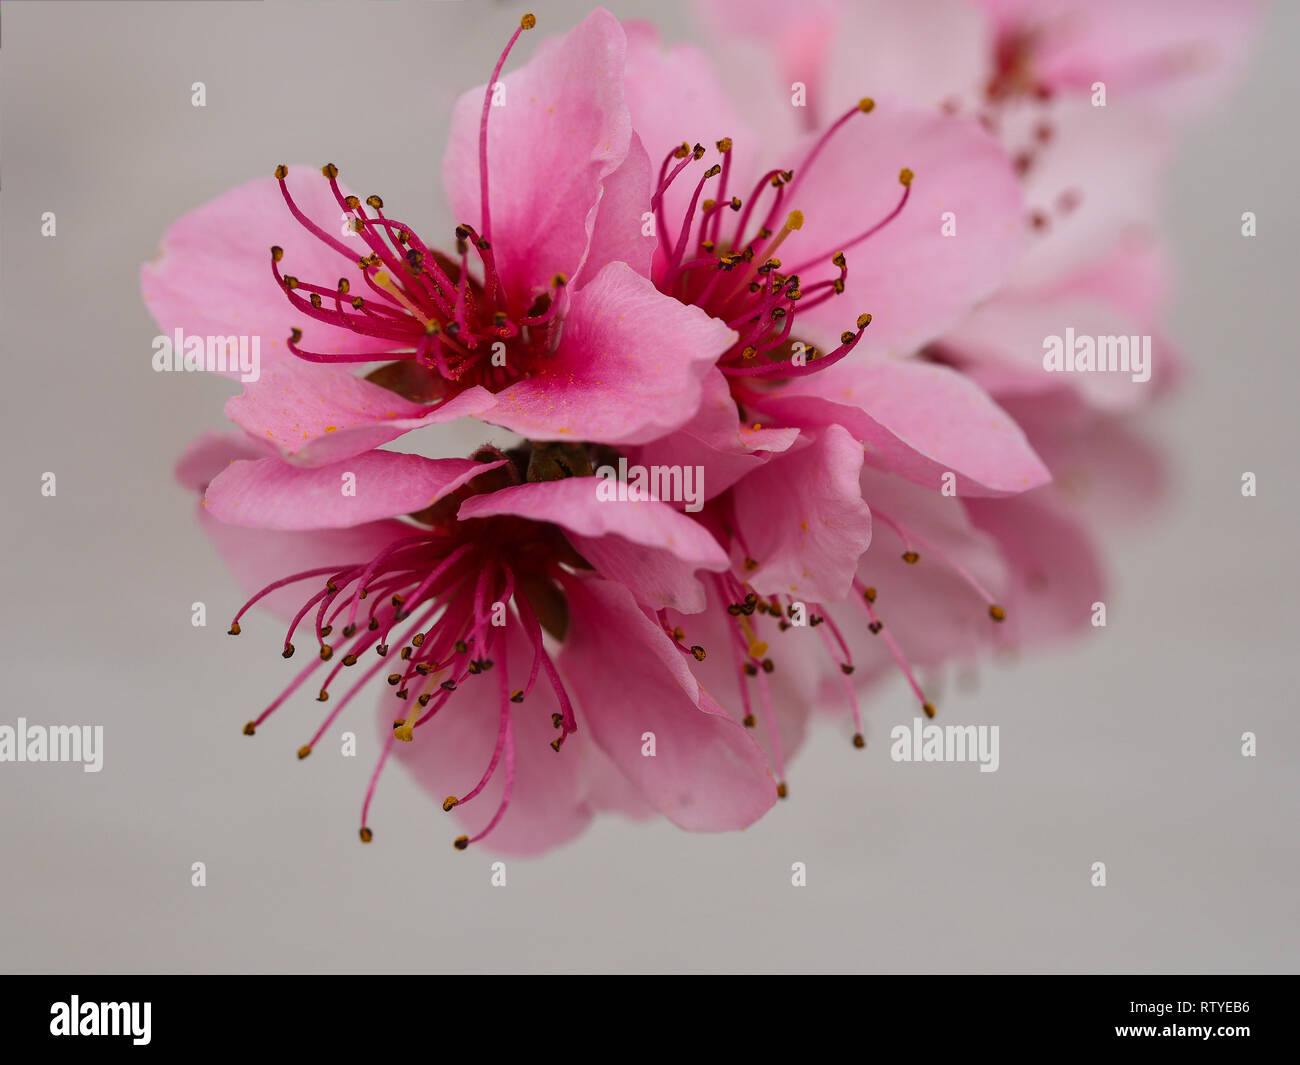 Nahaufnahme des Schönen pink Peach Blossom mit langen Staubfäden und Antheren auf einem Ast mit einer weißen Wand Hintergrund Stockfoto